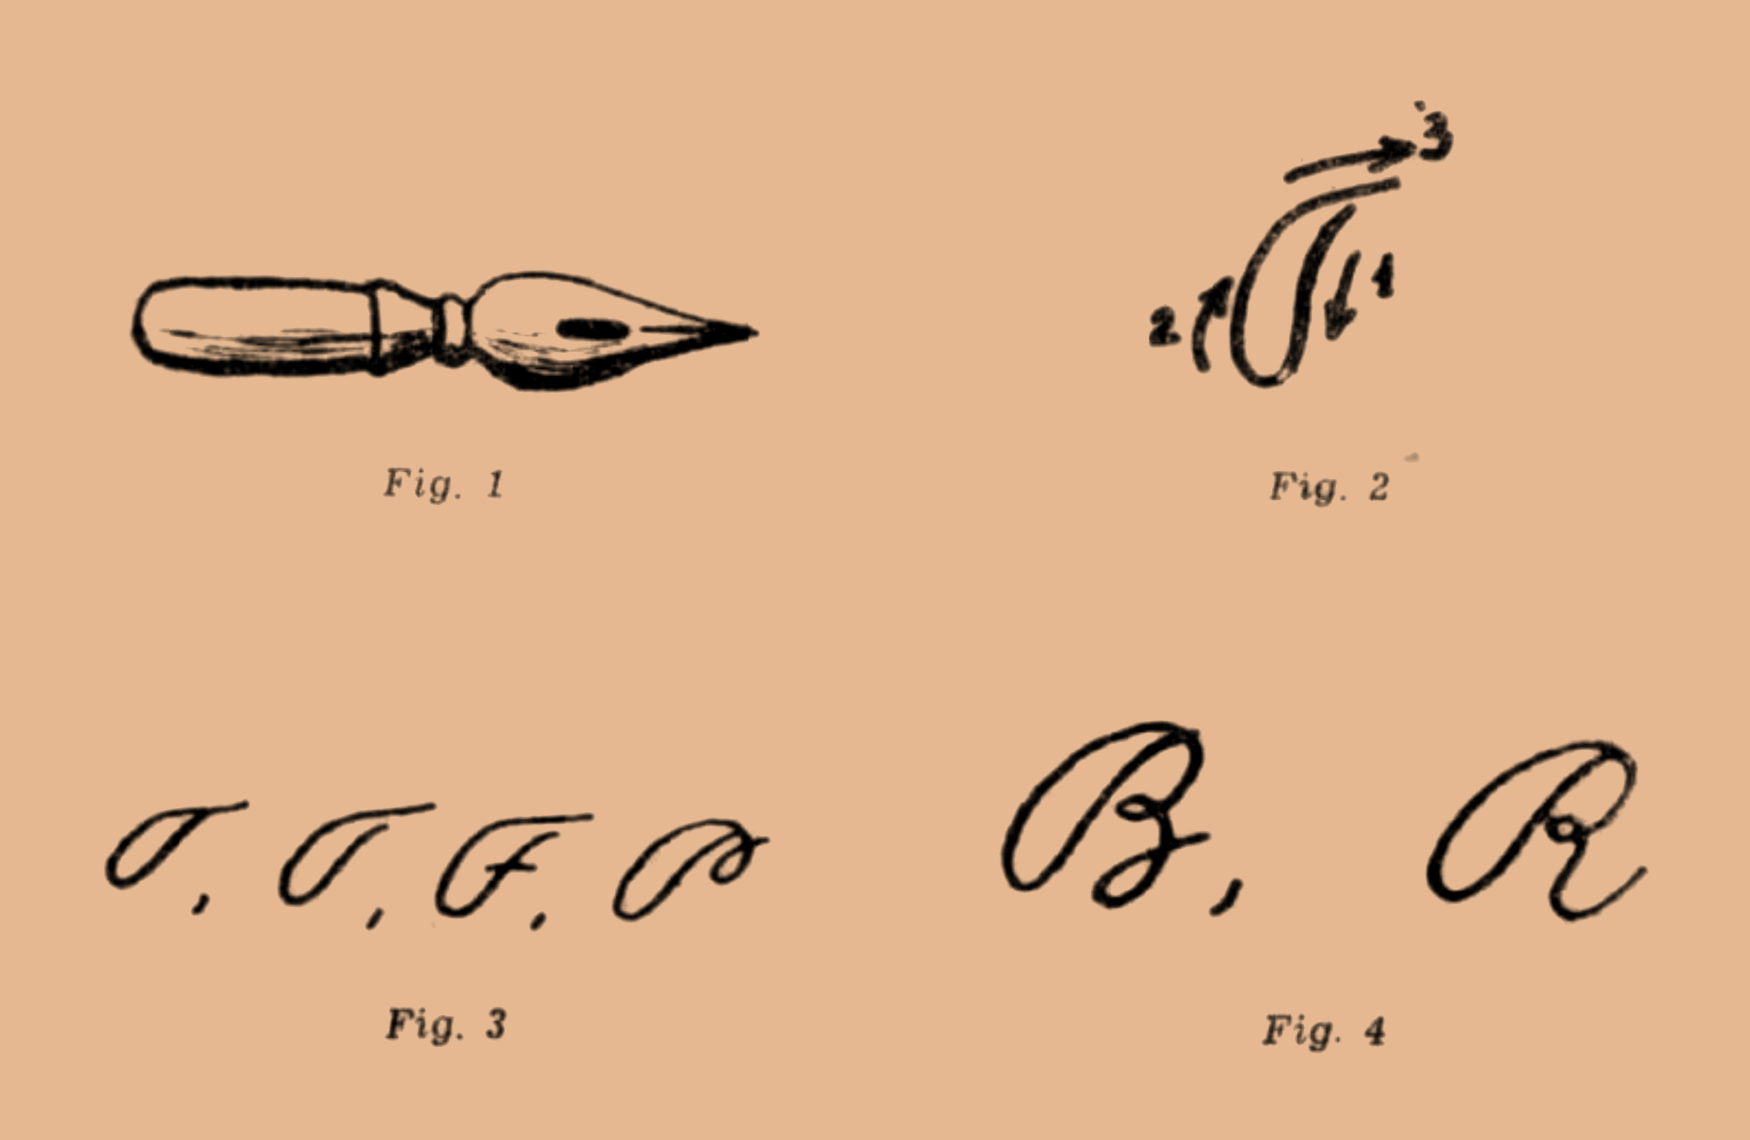 Patru figuri: 1. o peniță peștișor 2. trăsătura șerpuită coborîtoare 3. literele T, F, P 4. literele B și R